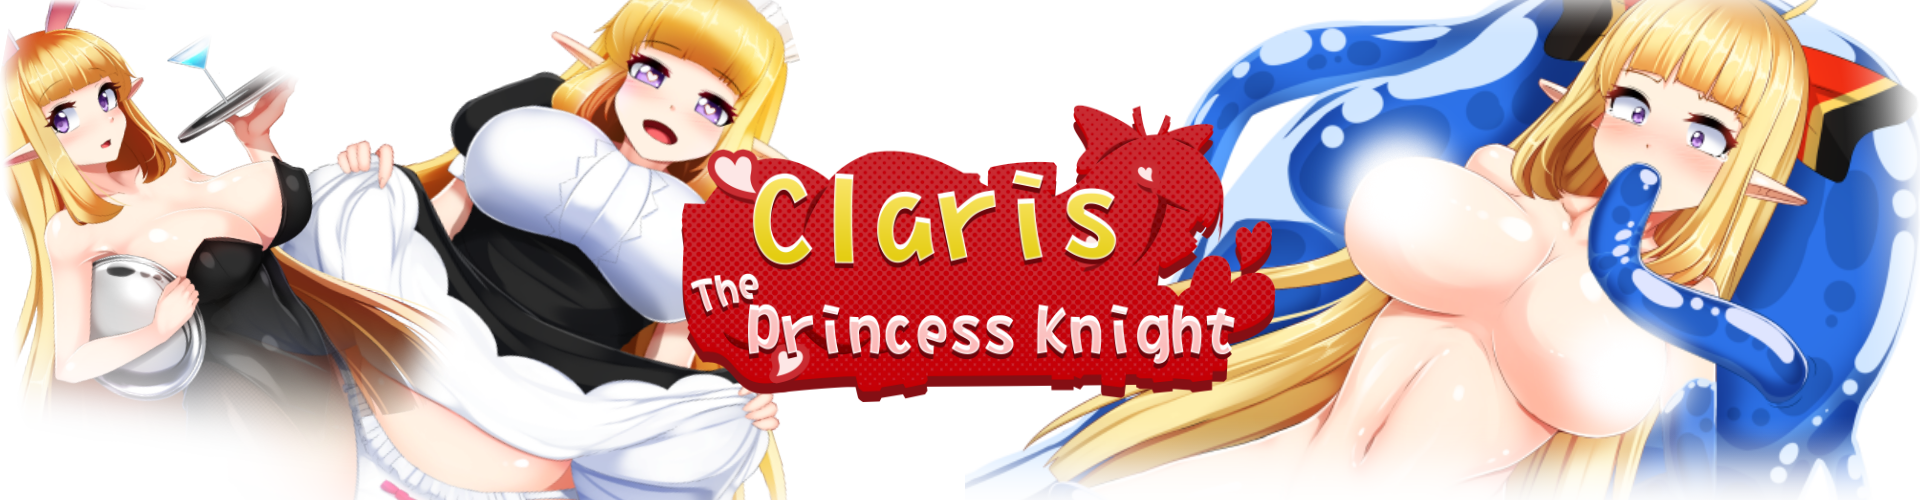 Claris the Princess Knight (18+)